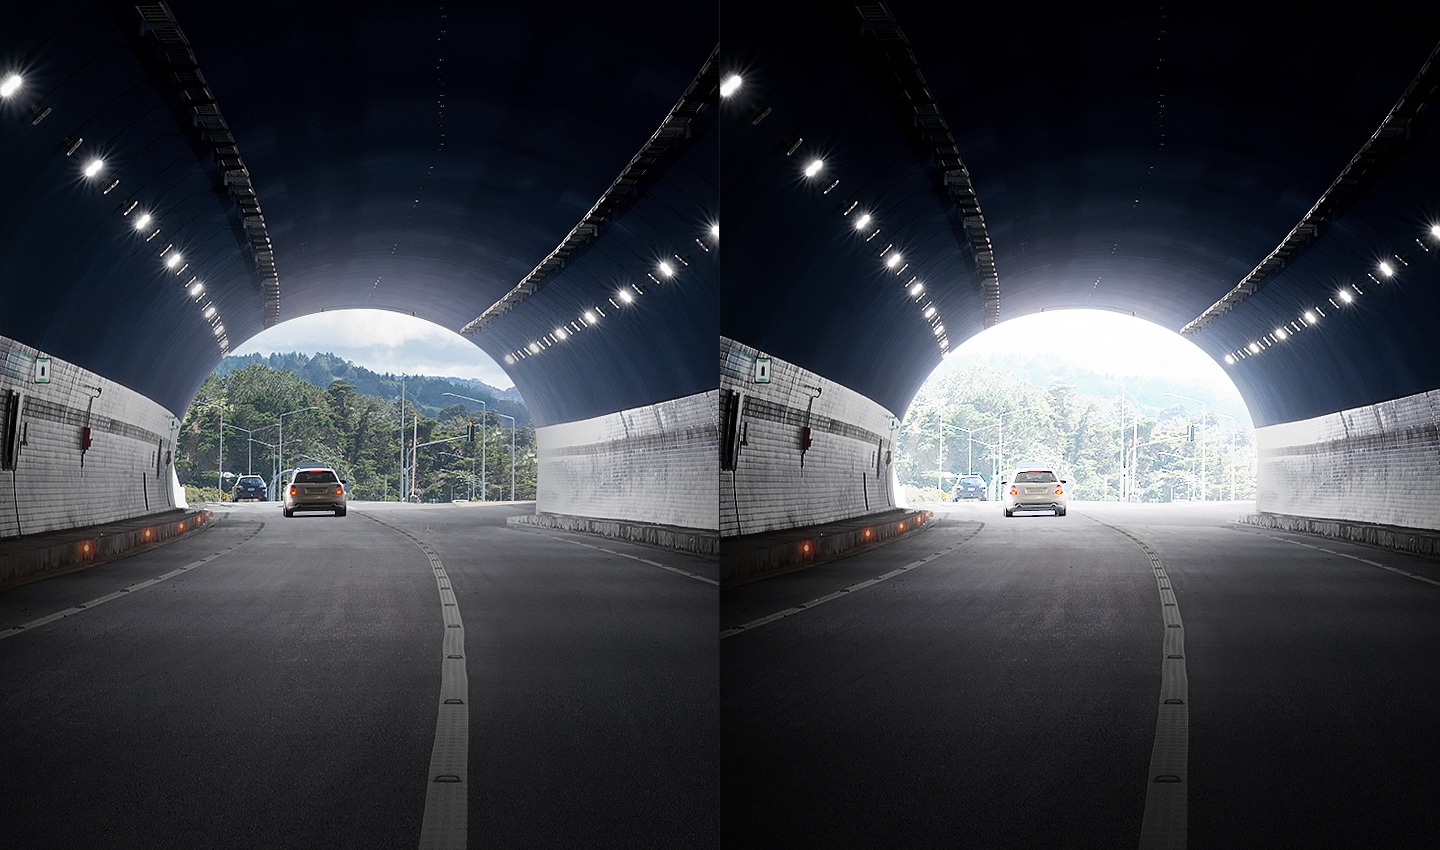 这是一张一分为二并进行对比的图片。左图中隧道外的景象十分清晰，而右图中隧道外的景象较为模糊。